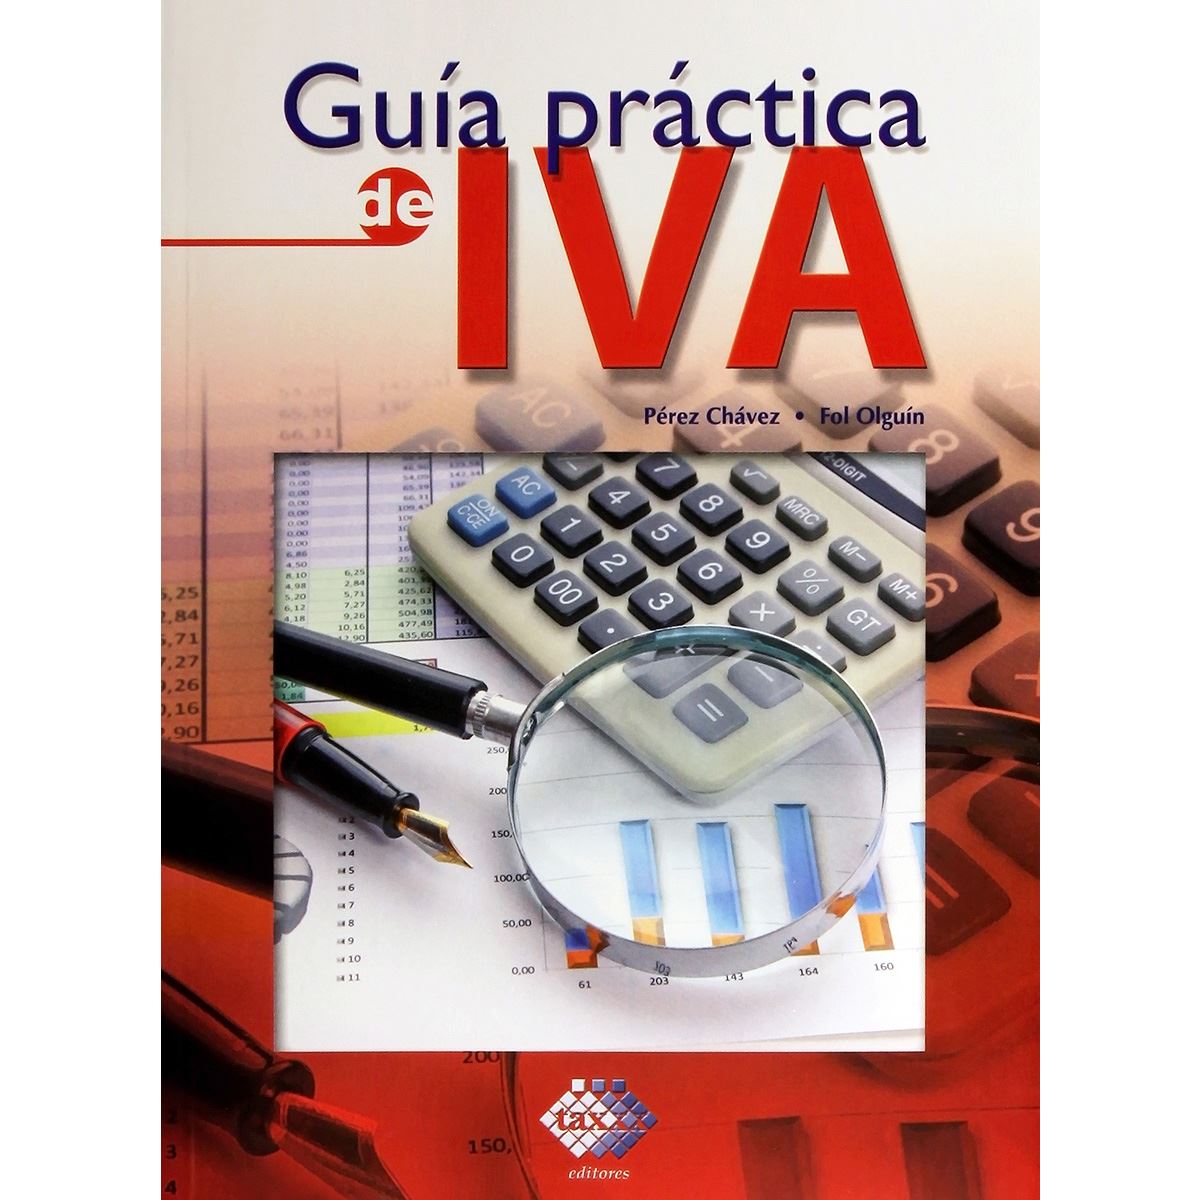 Guia practica de IVA